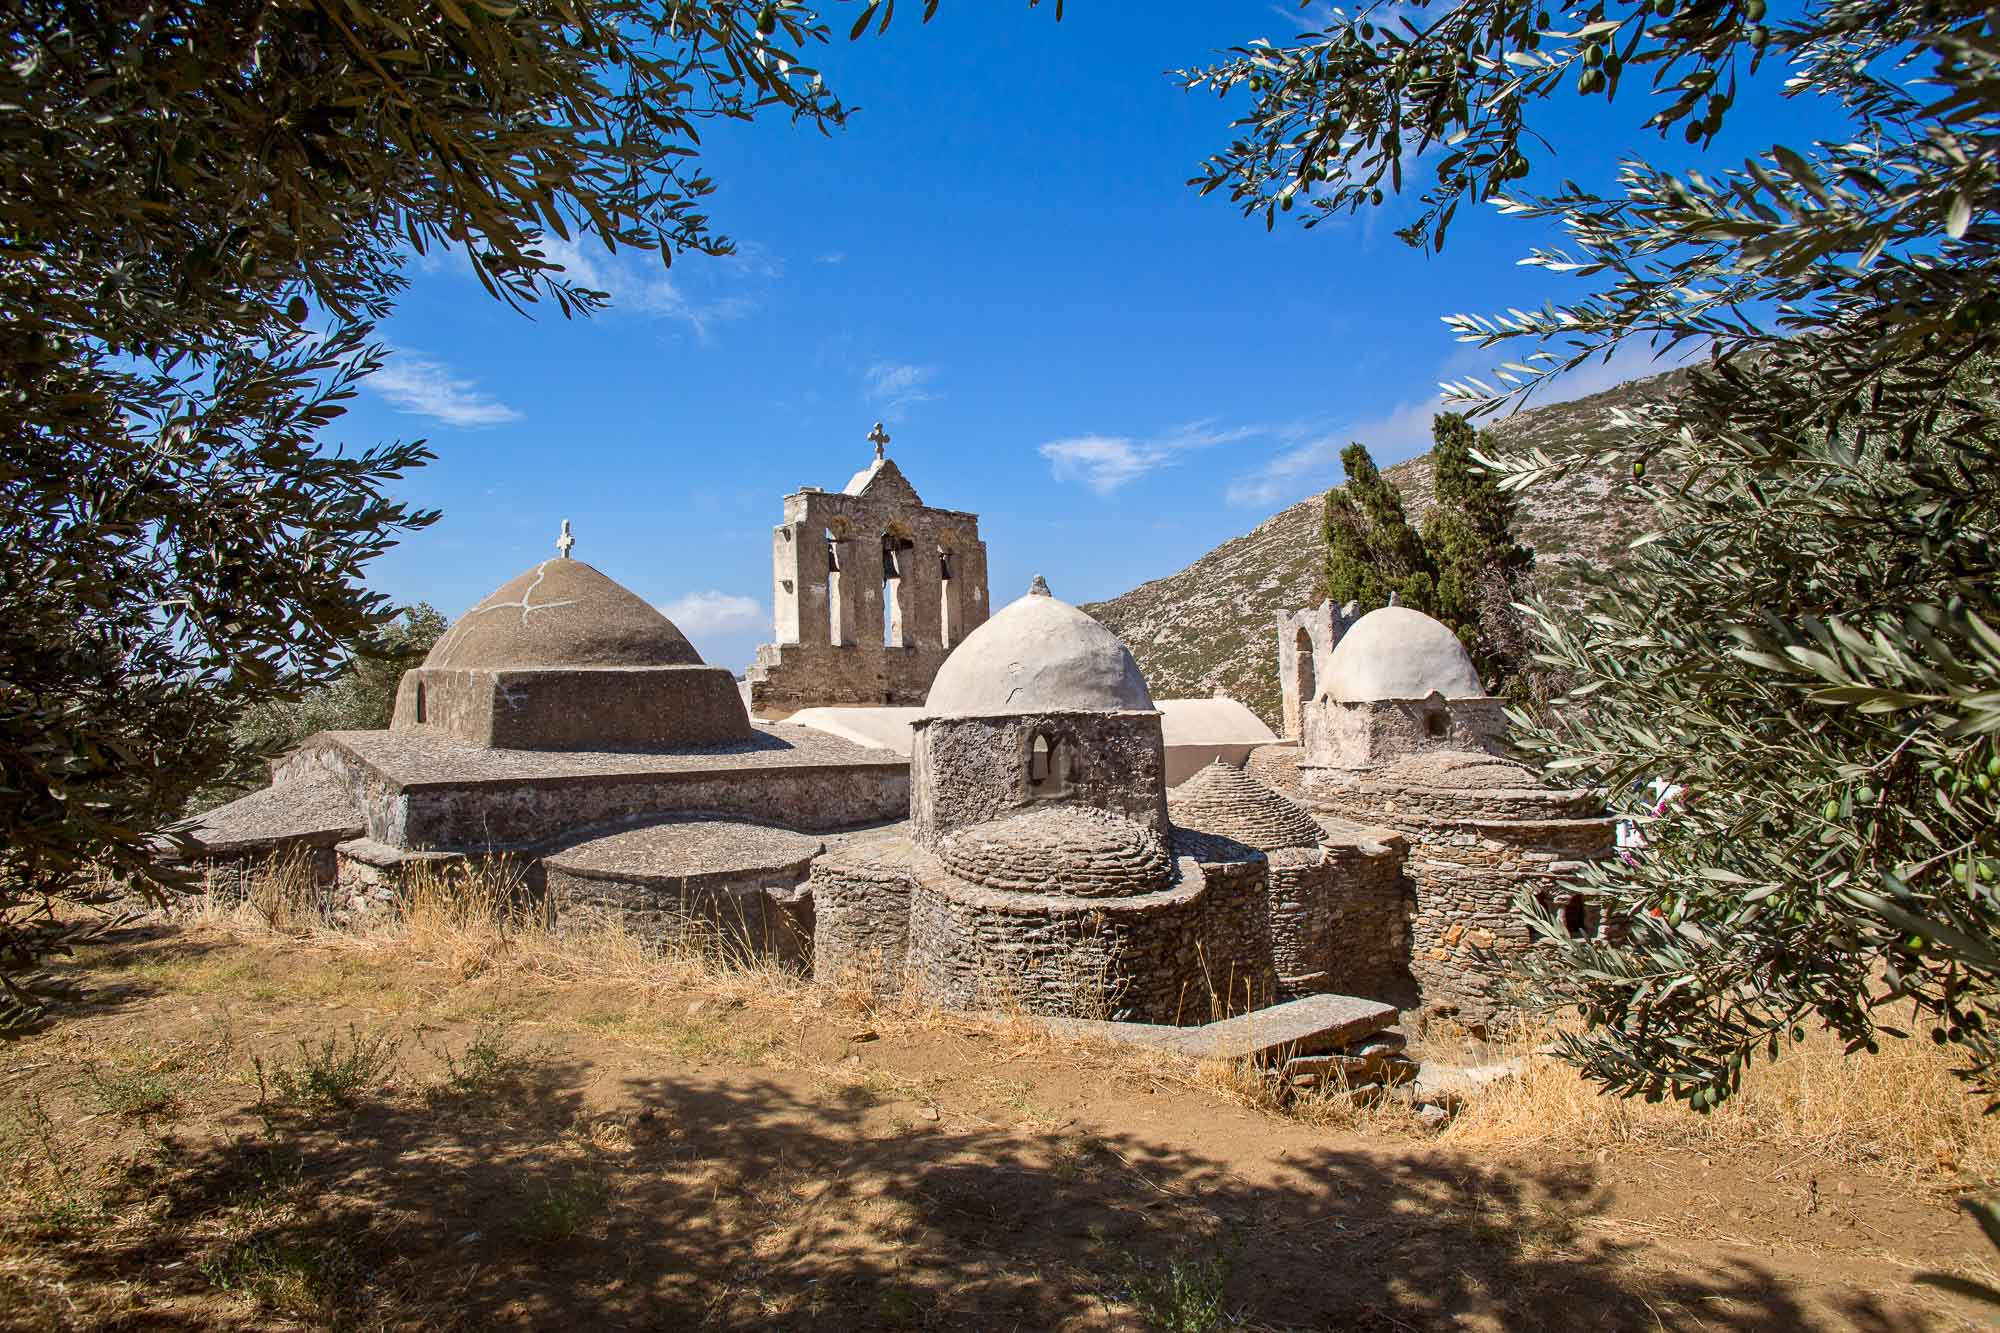 Μονή της Παναγίας Δροσιανής: Ταξίδι σε ένα από τα αρχαιότερα μοναστήρια των ΒαλκανίωνΠηγή φωτογραφίας: Christos Drazos 